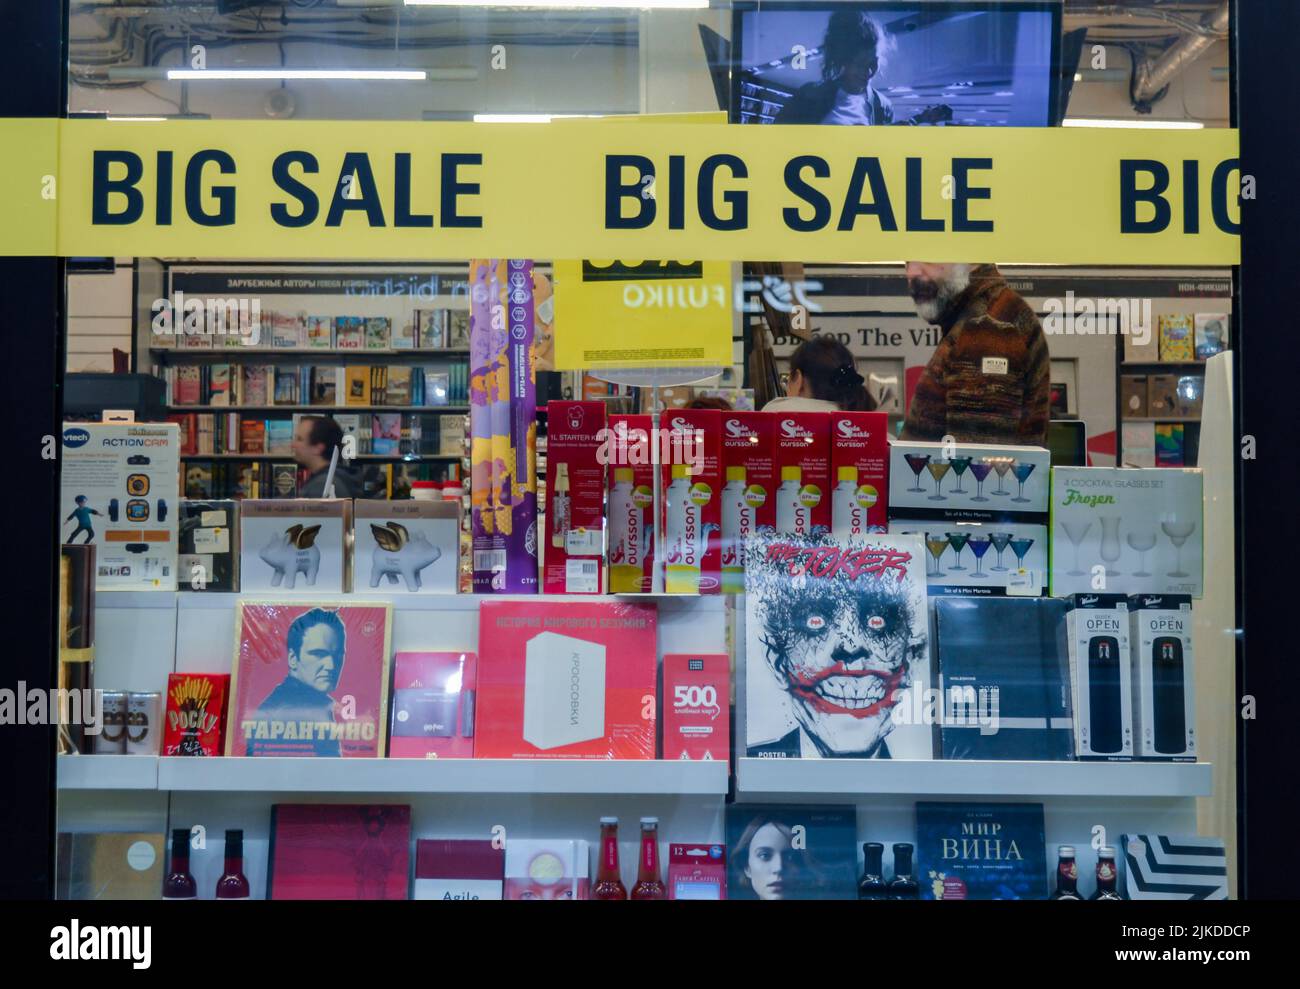 Moskau, Russland, Oktober 2019: Shop-Front Buch- und Geschenkladen mit Büchern über Tarantino, den Joker, helle Waren und Getränke und ein breites gelbes Band wi Stockfoto